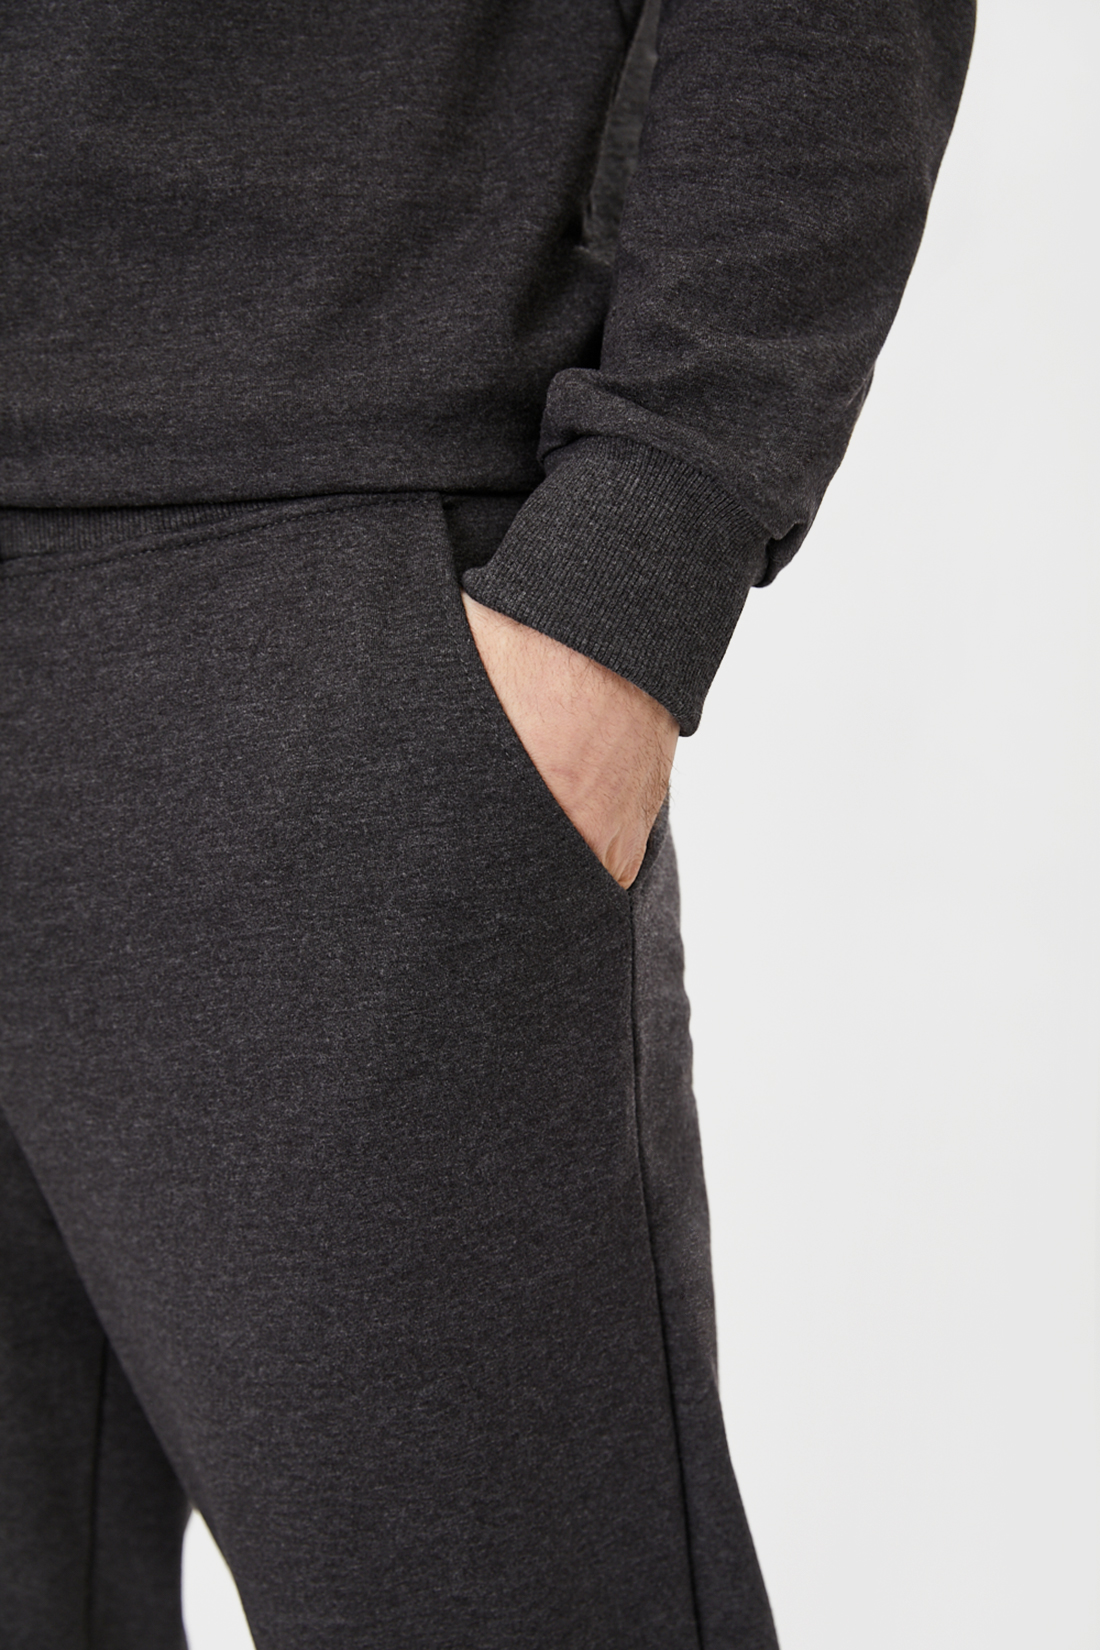 Трикотажные брюки-джоггеры (арт. baon B791018), размер L, цвет marengo melange#серый Трикотажные брюки-джоггеры (арт. baon B791018) - фото 3